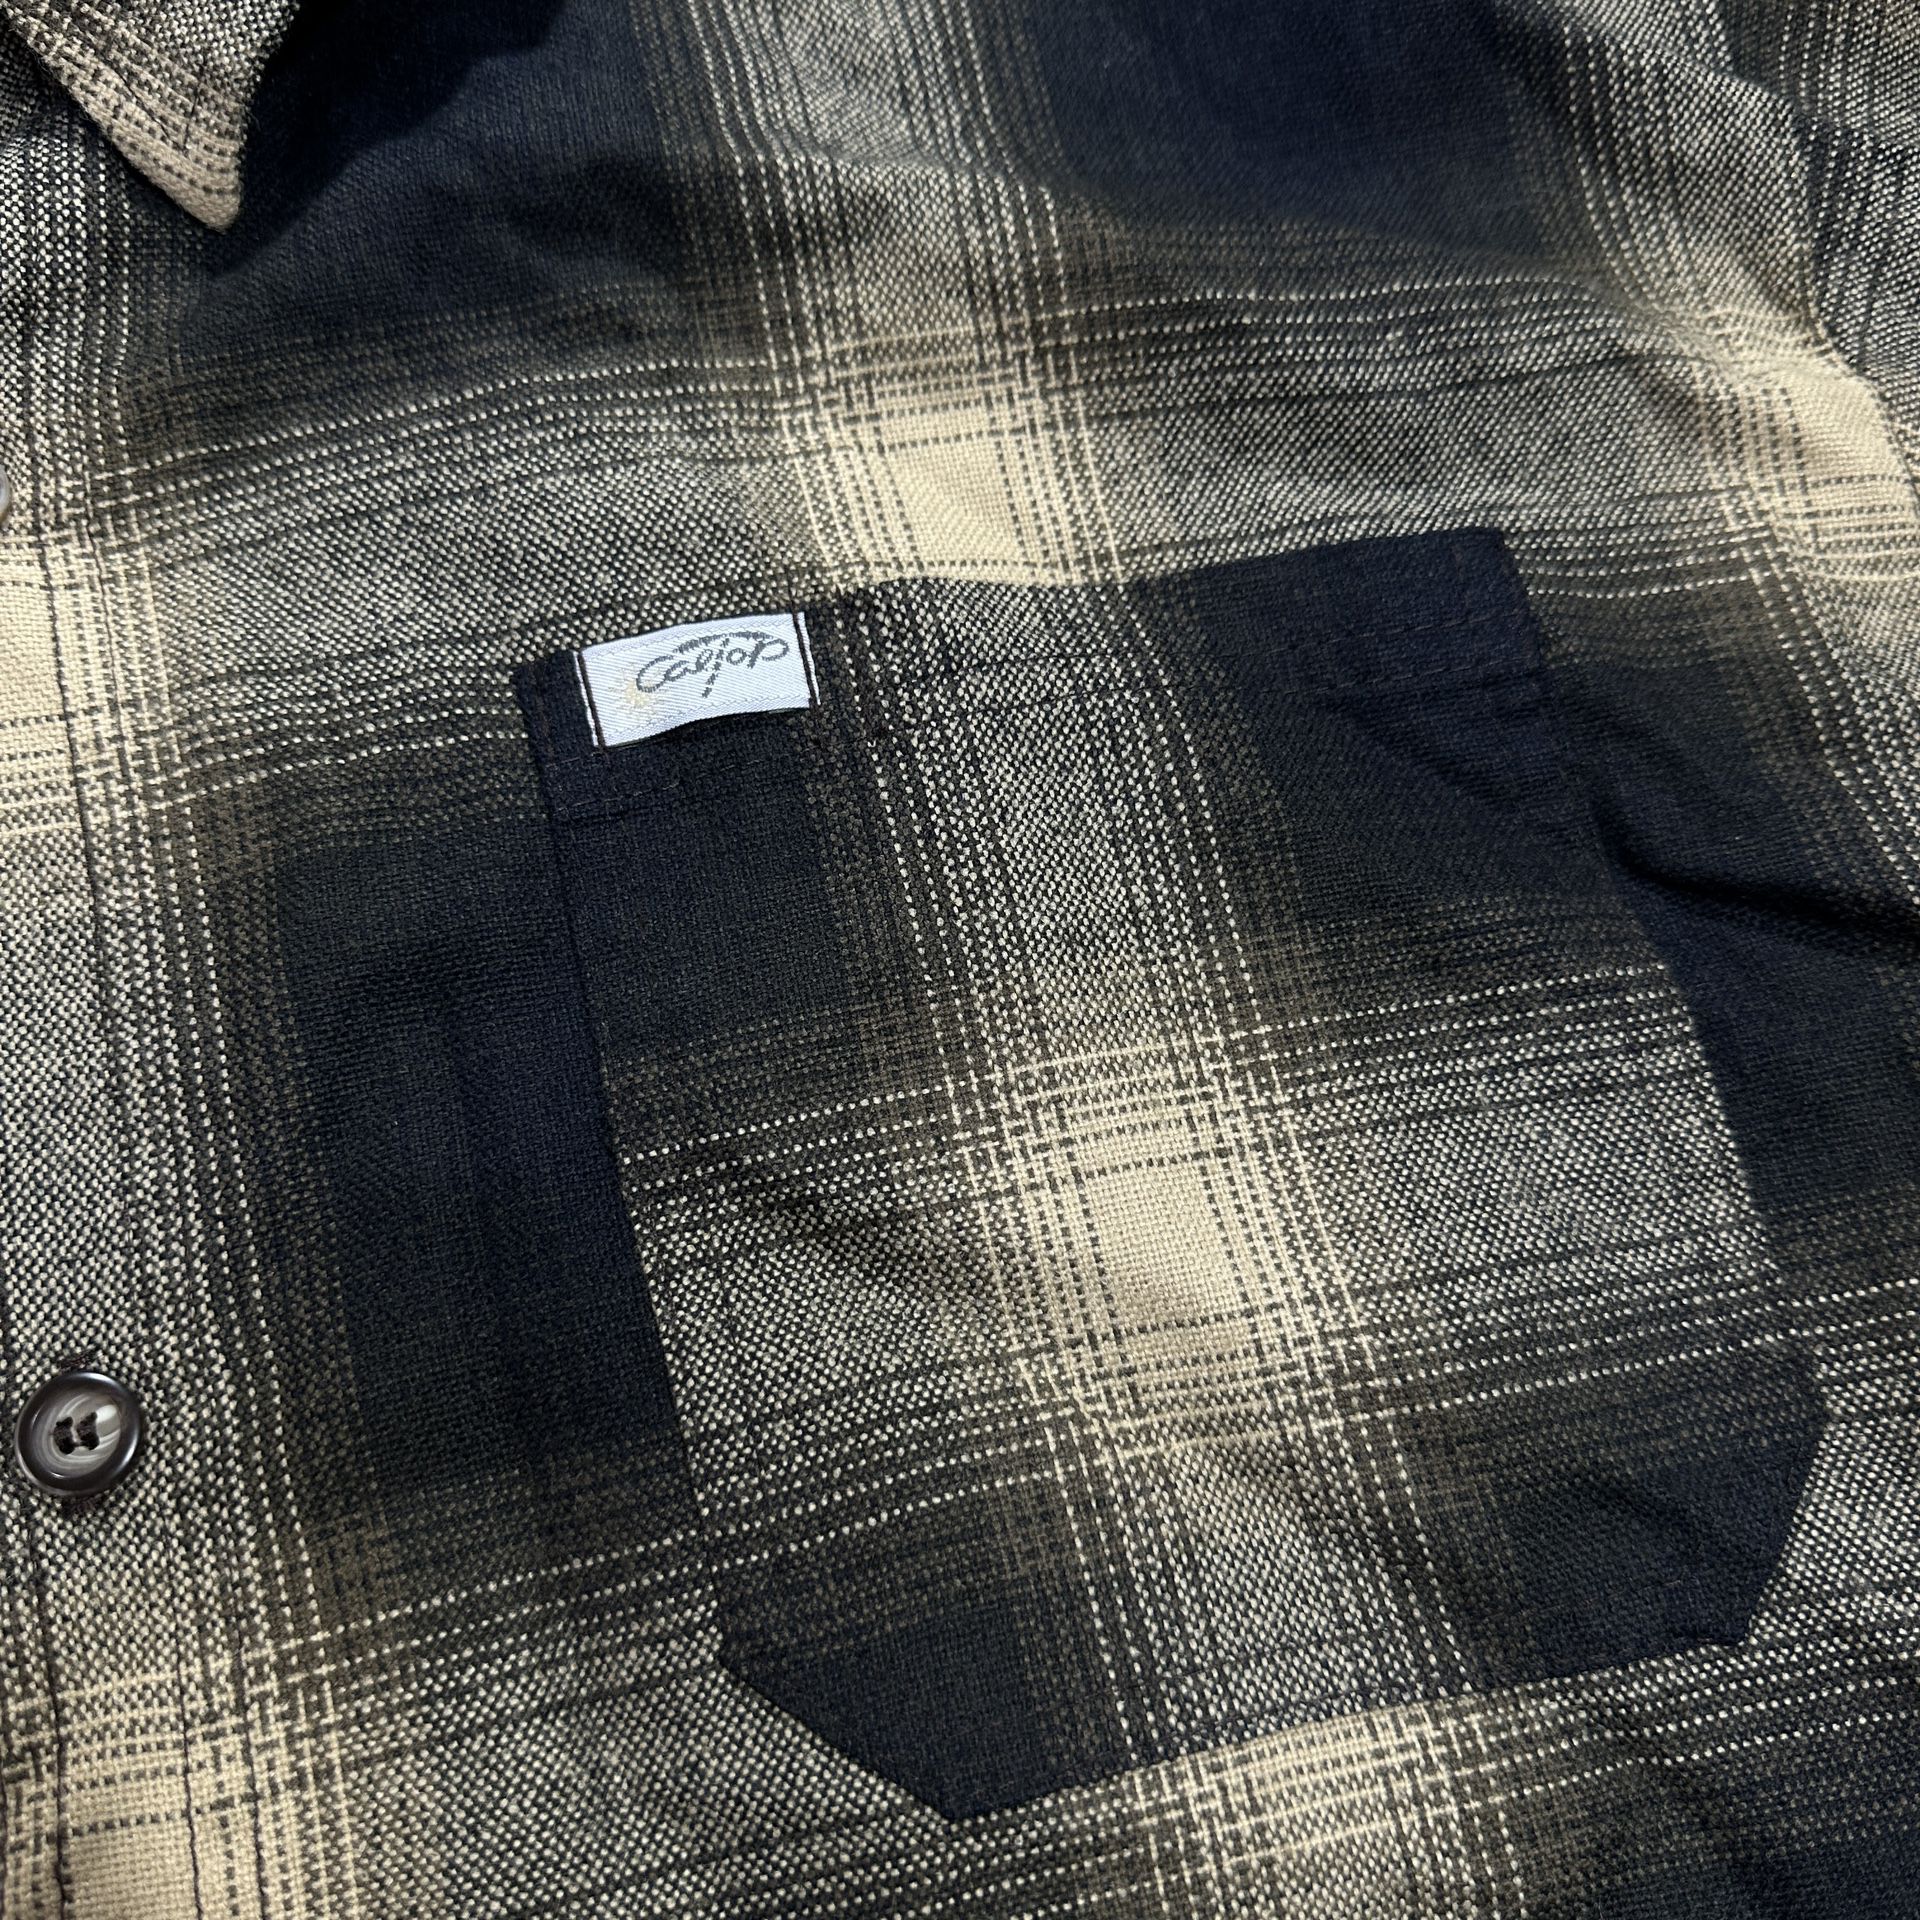 Vintage CalTop Shirt Men’s Size XL Black Brown Plaid Flannel Button Up ...